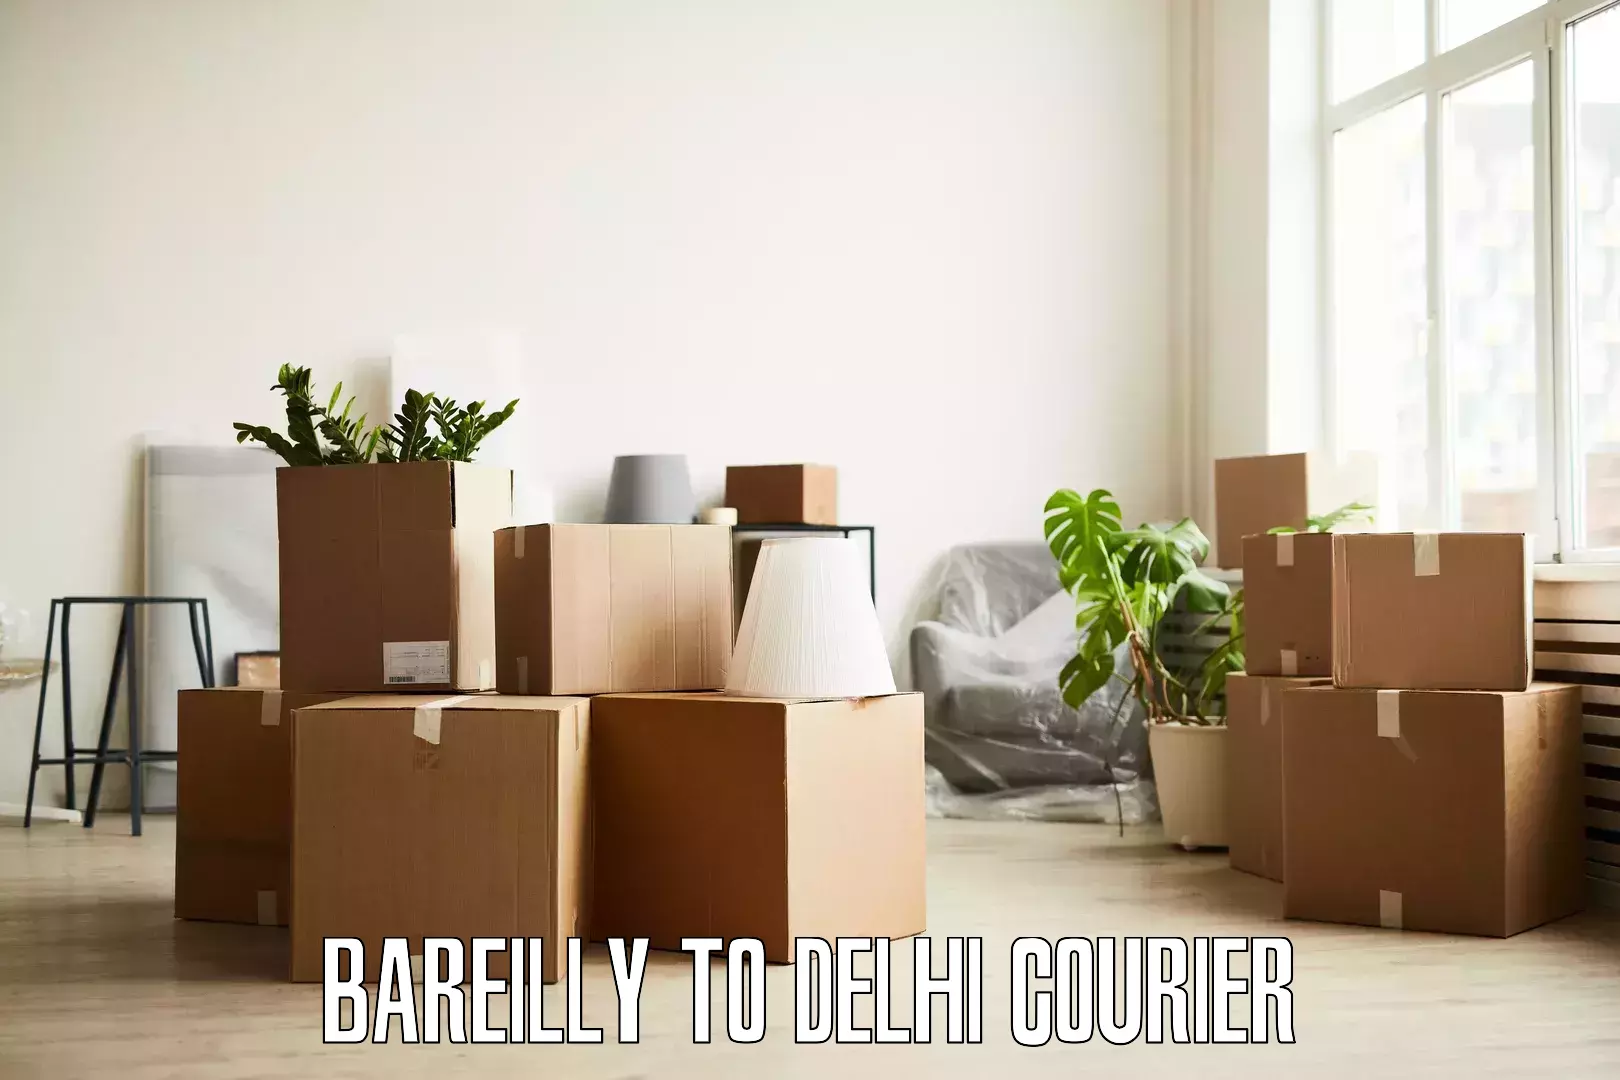 Home moving experts Bareilly to Sarojini Nagar